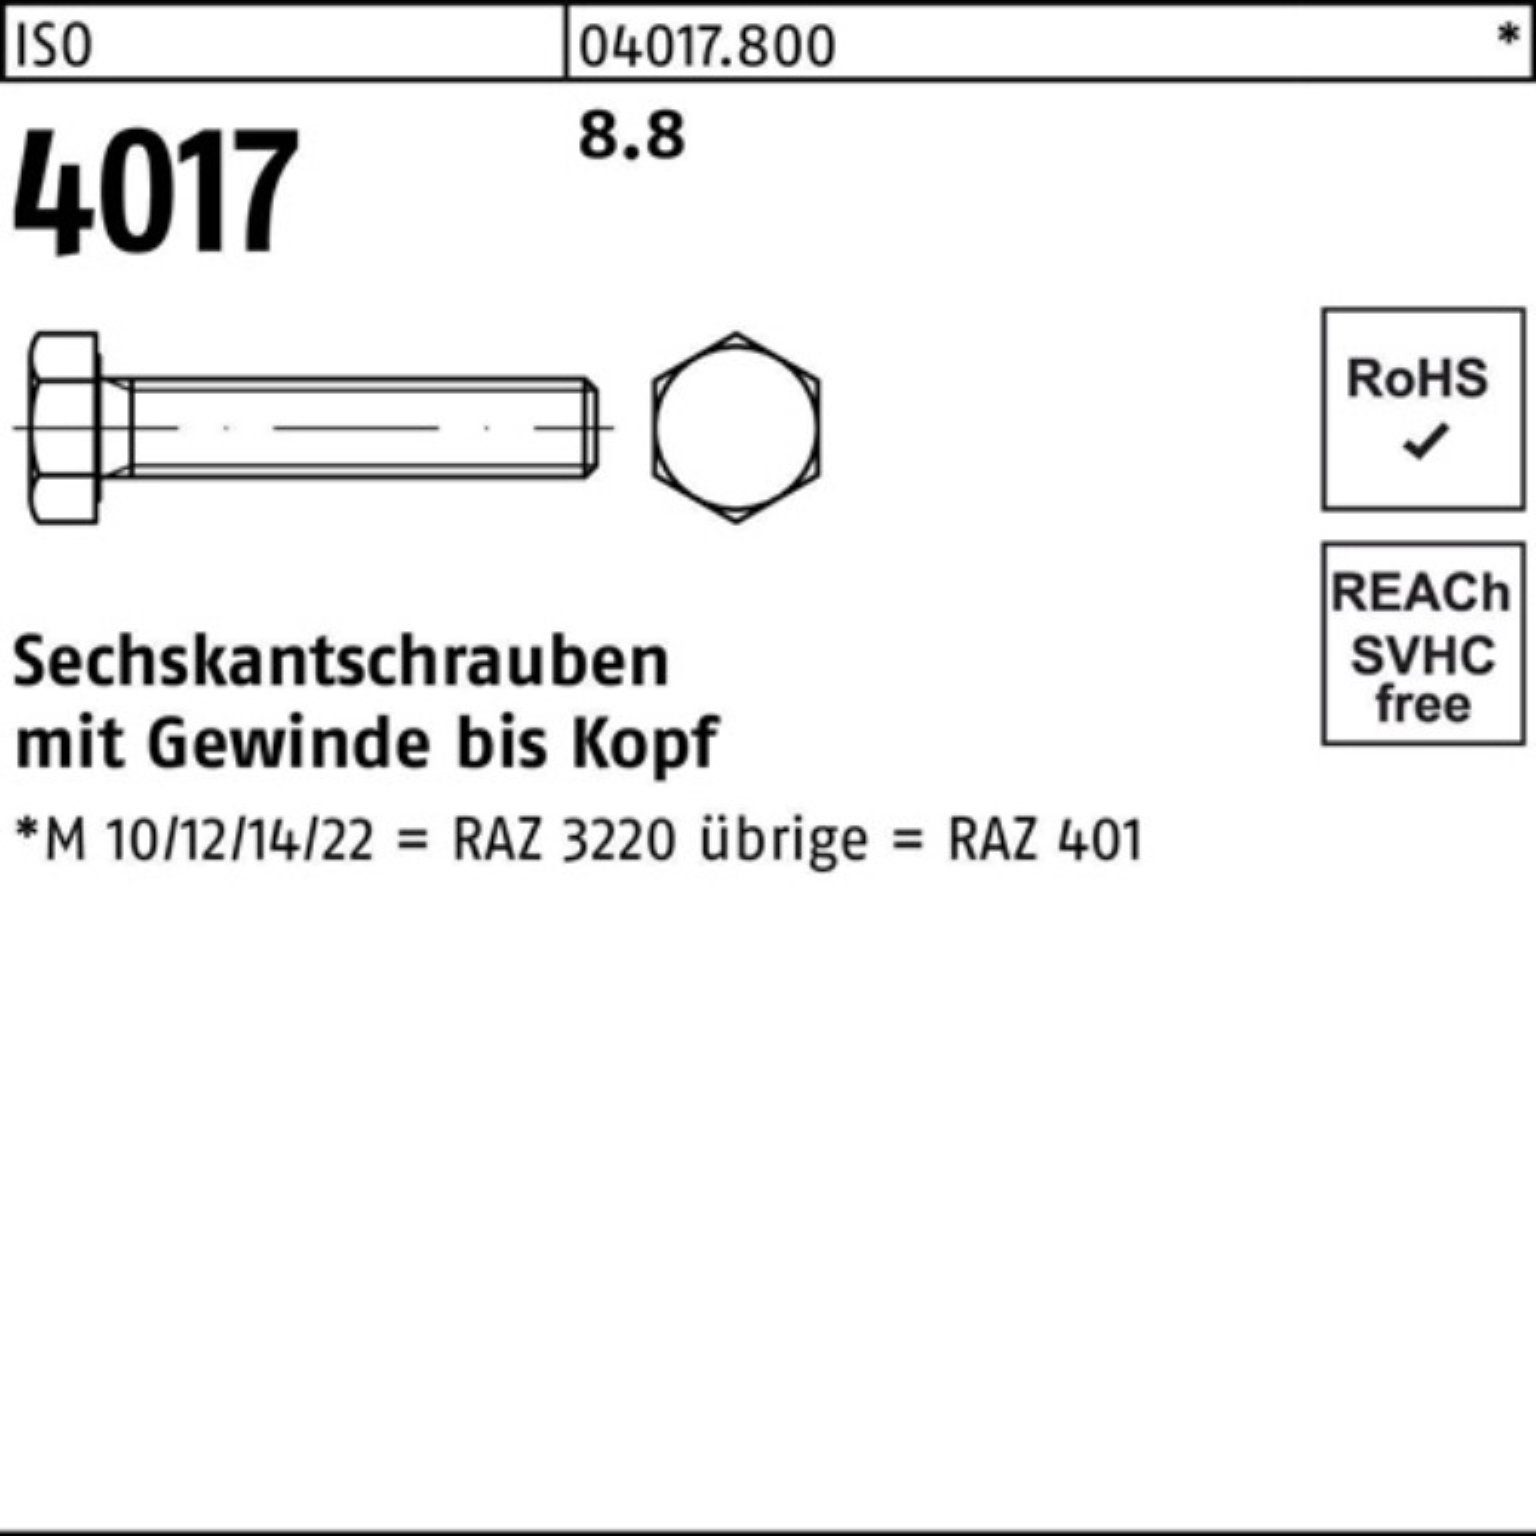 4017 ISO Bufab Sechskantschraube Sechskantschraube Stück Pack 8.8 40 ISO 200 VG M8x 100er 100